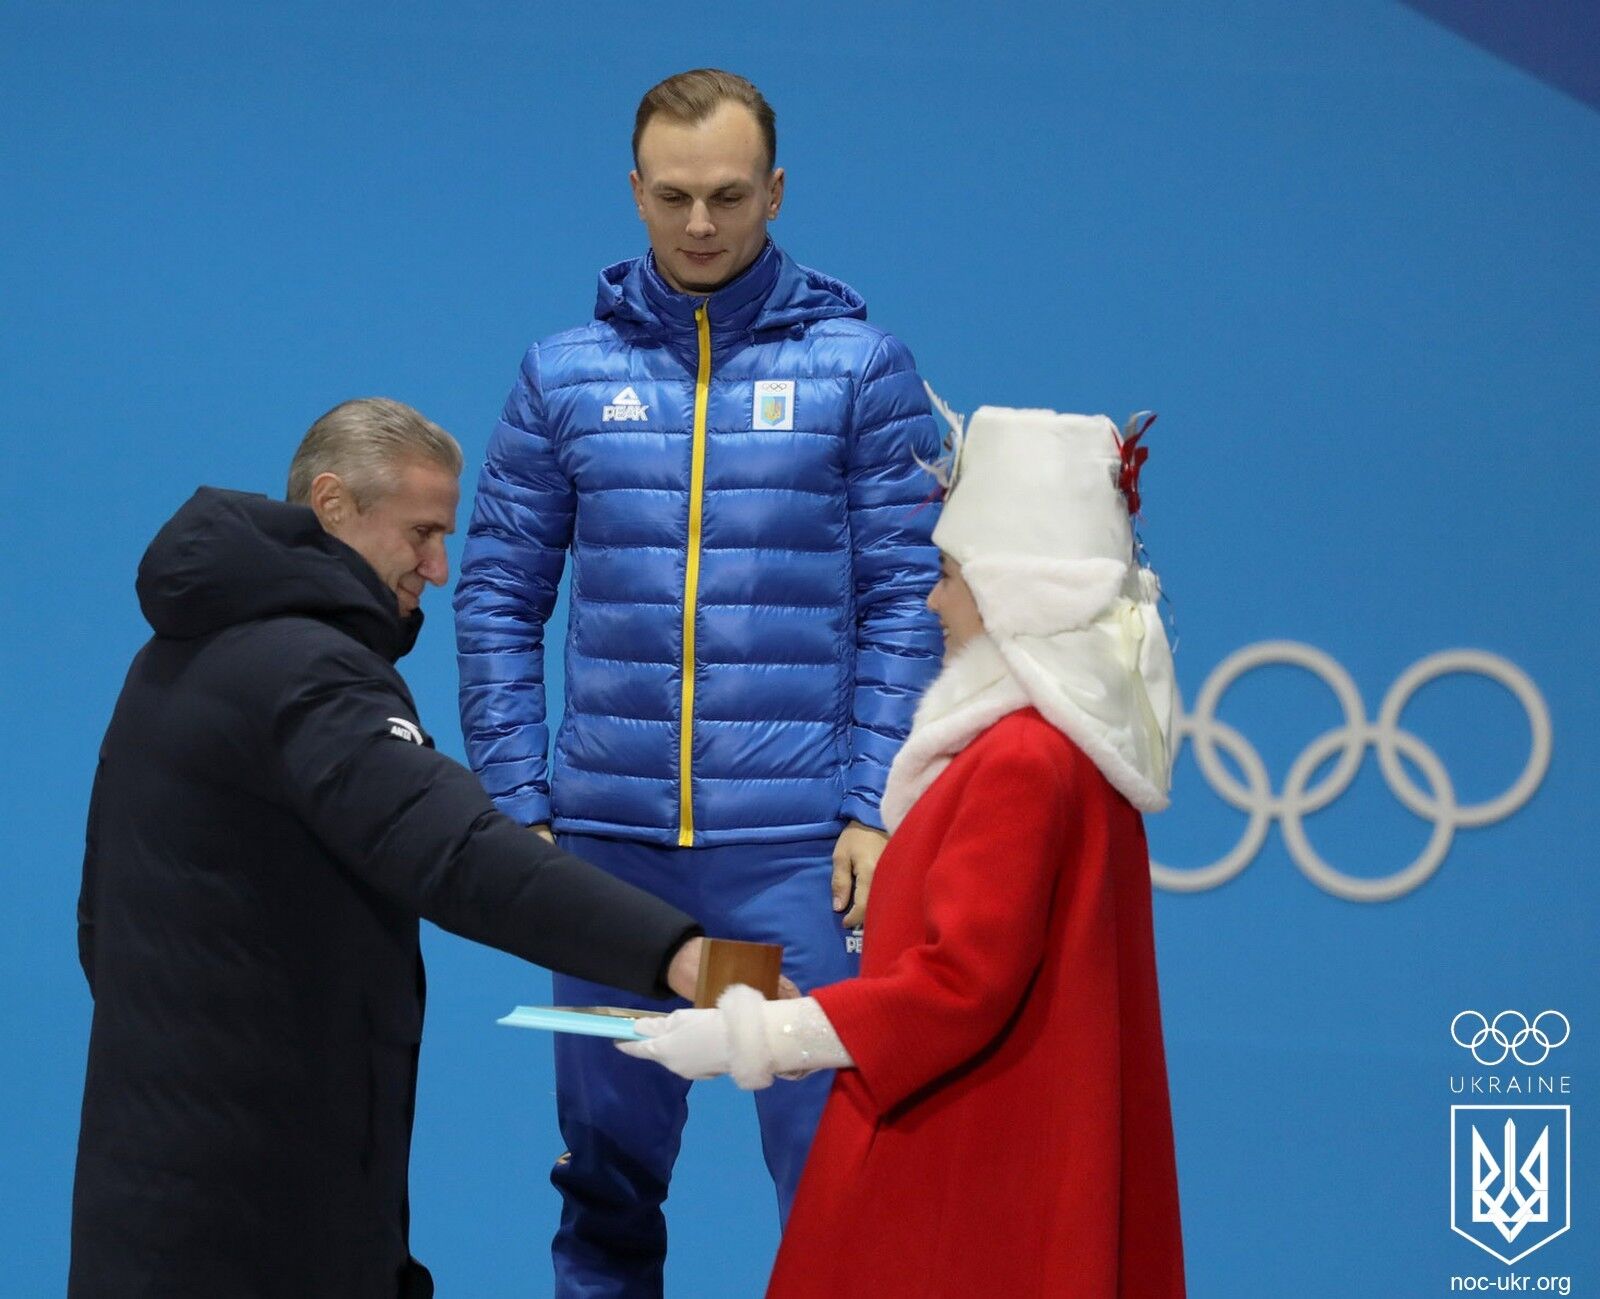 До слез! Появились фото и видео награждения украинского чемпиона Олимпиады-2018